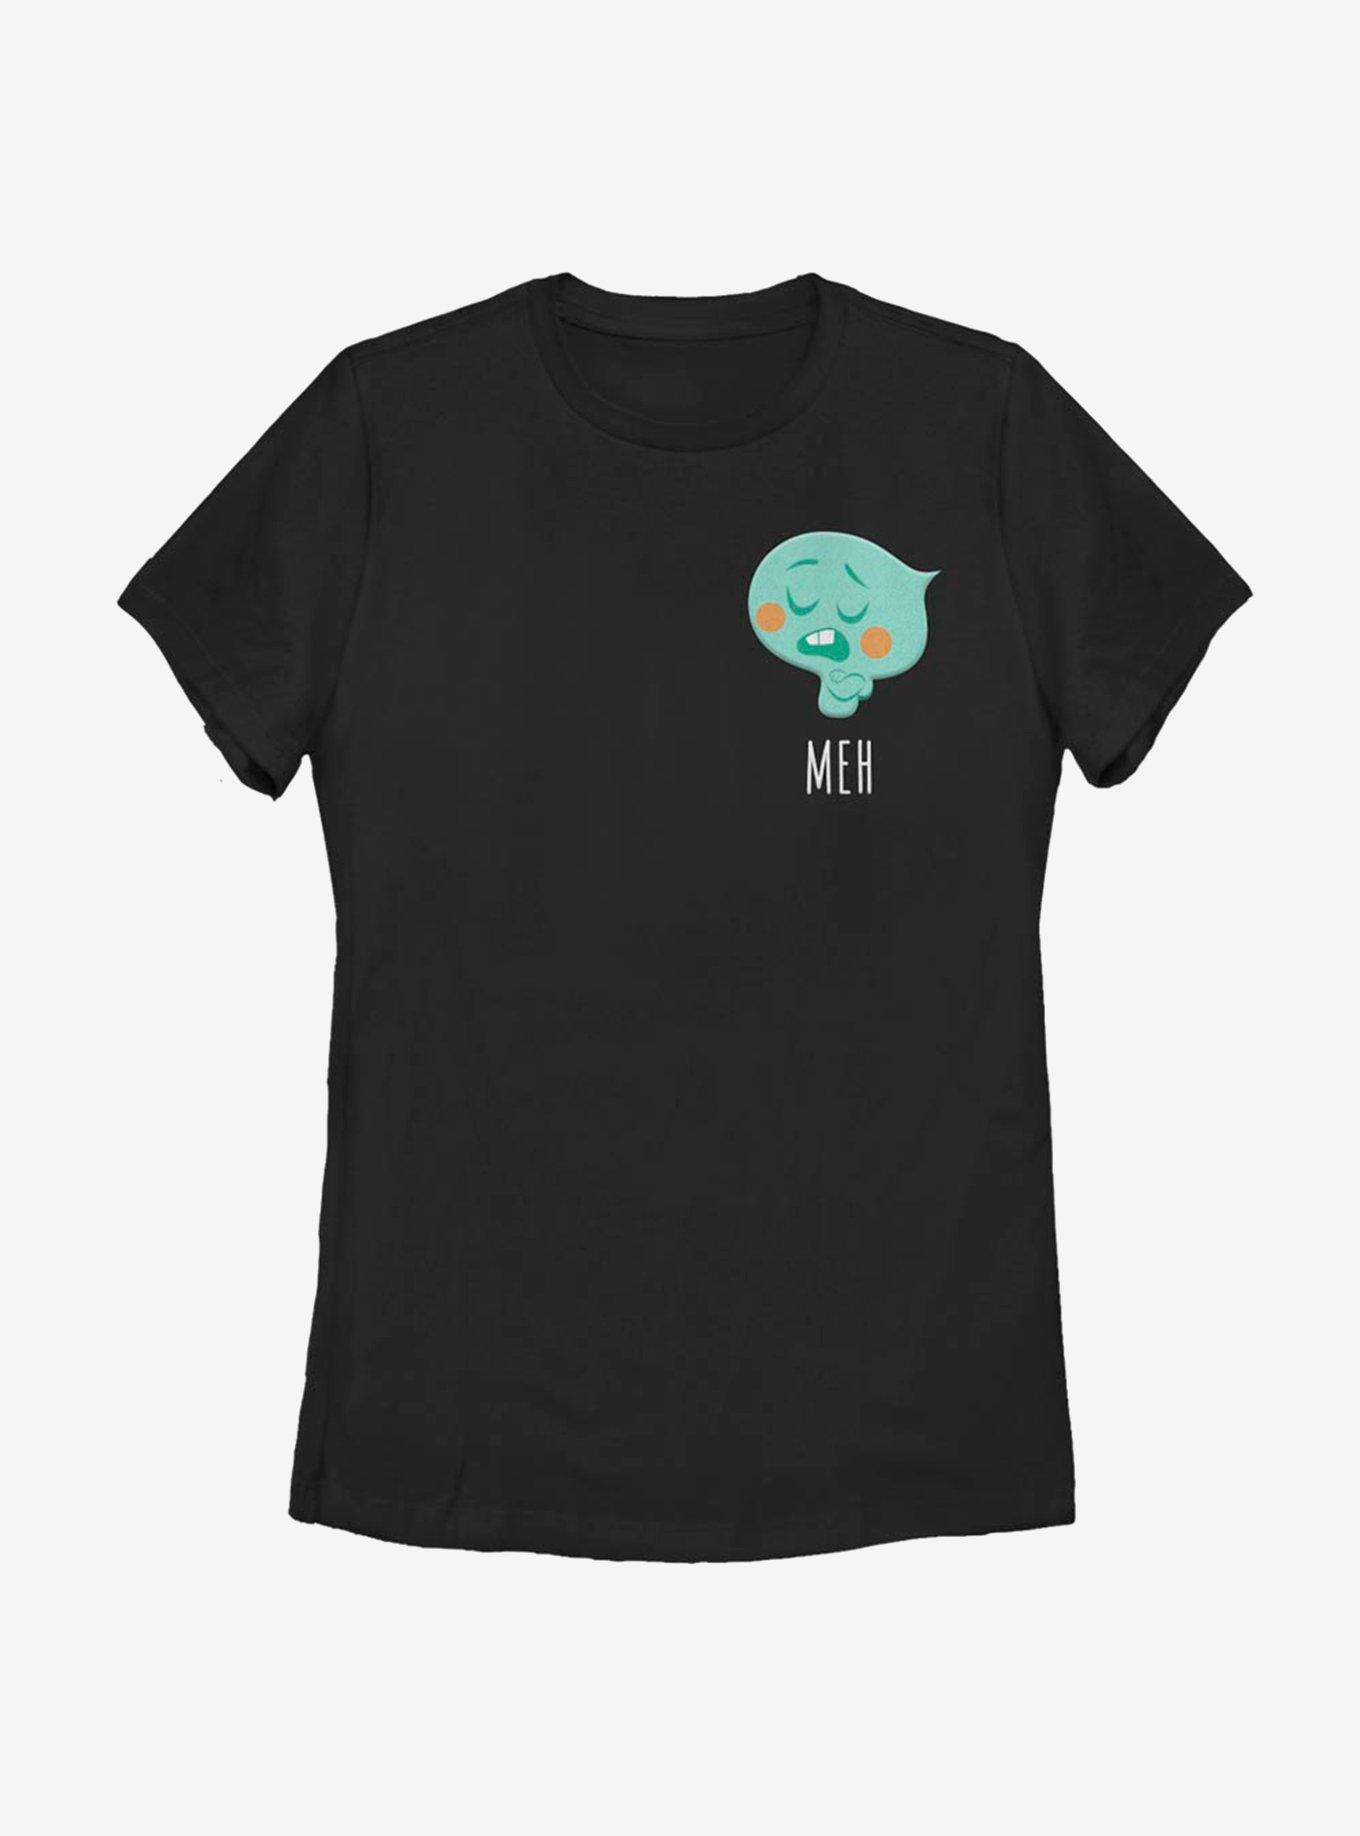 Disney Pixar Soul 22 Meh Womens T-Shirt, BLACK, hi-res